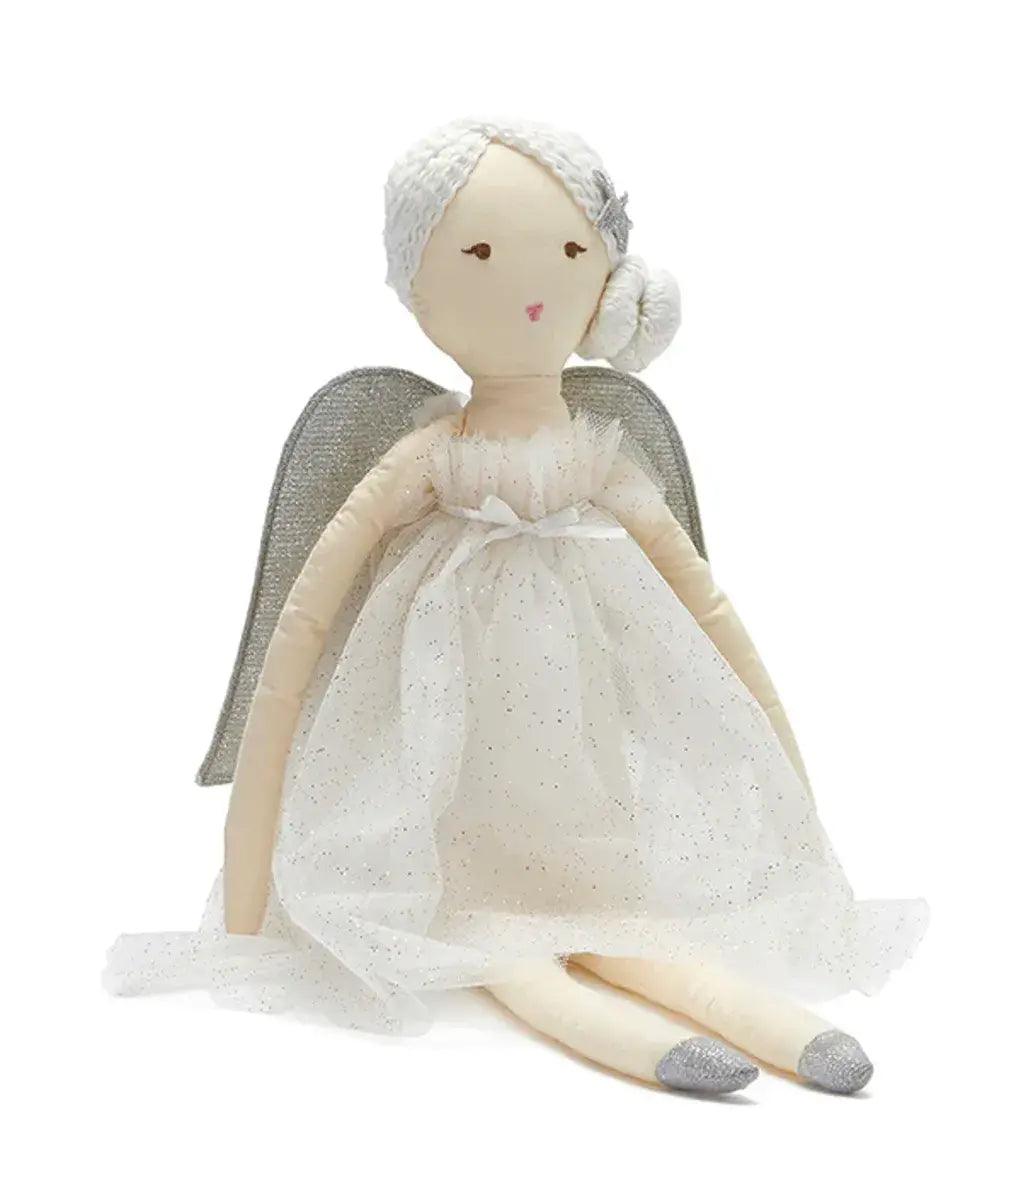 Isabella the Angel by Nana Huchy